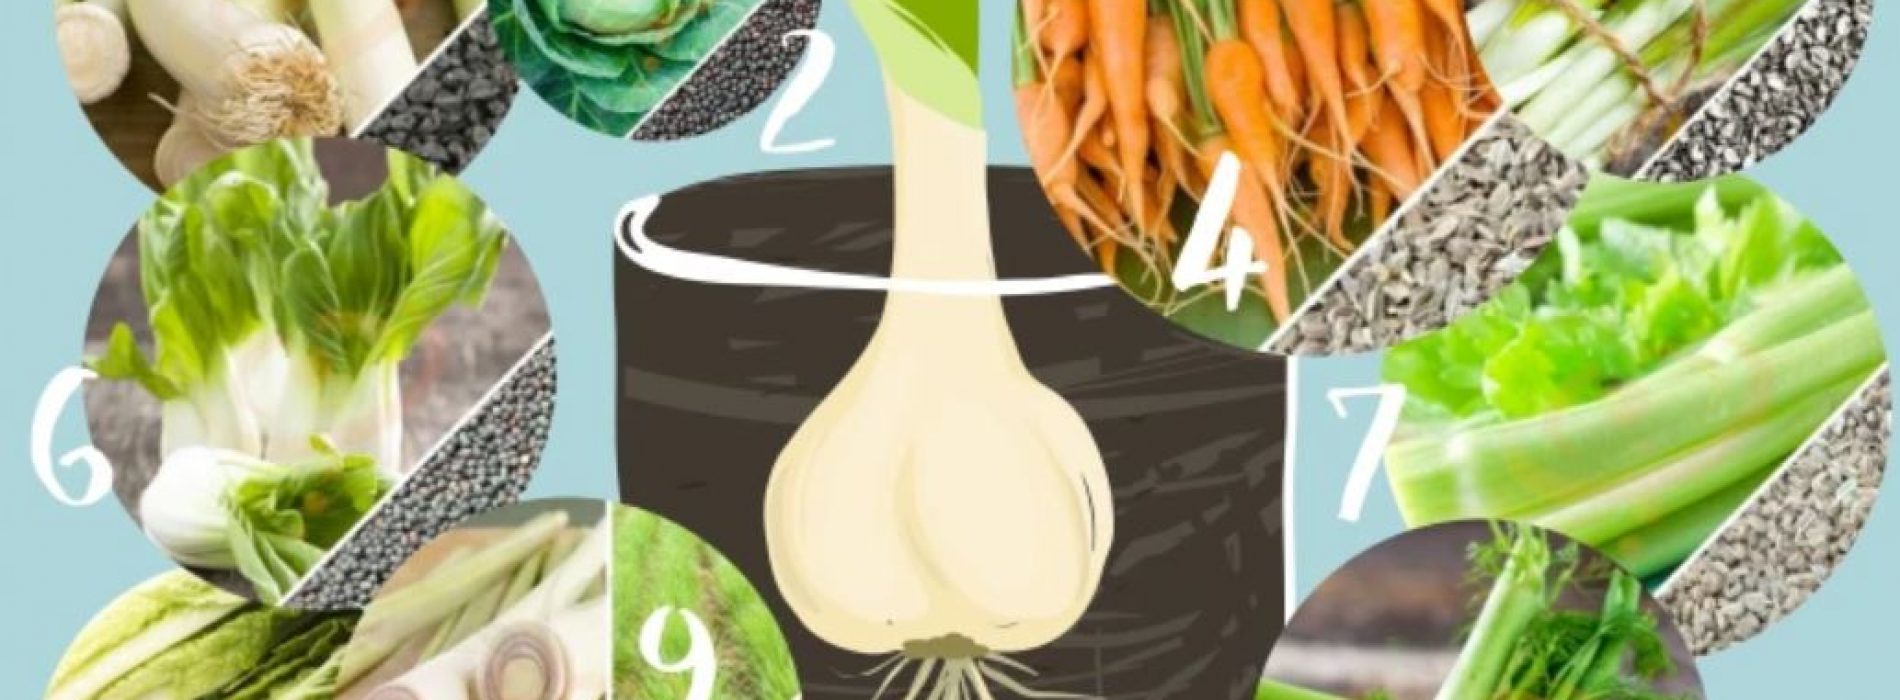 Paraatheid: hoe groenten in water te laten groeien